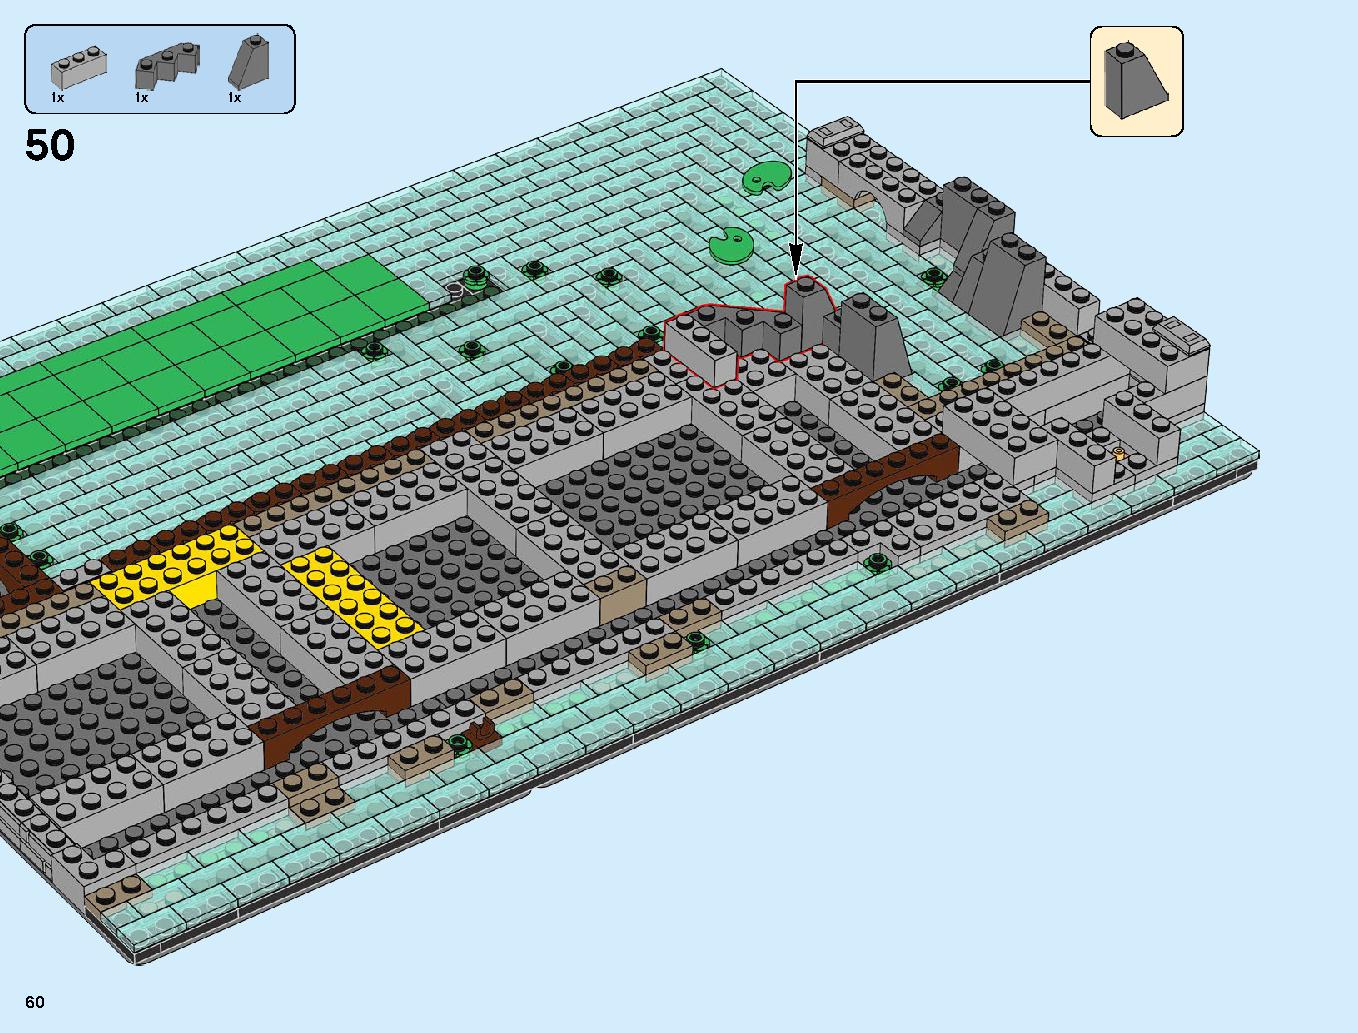 ニンジャゴーシティ・ポートパーク 70657 レゴの商品情報 レゴの説明書・組立方法 60 page